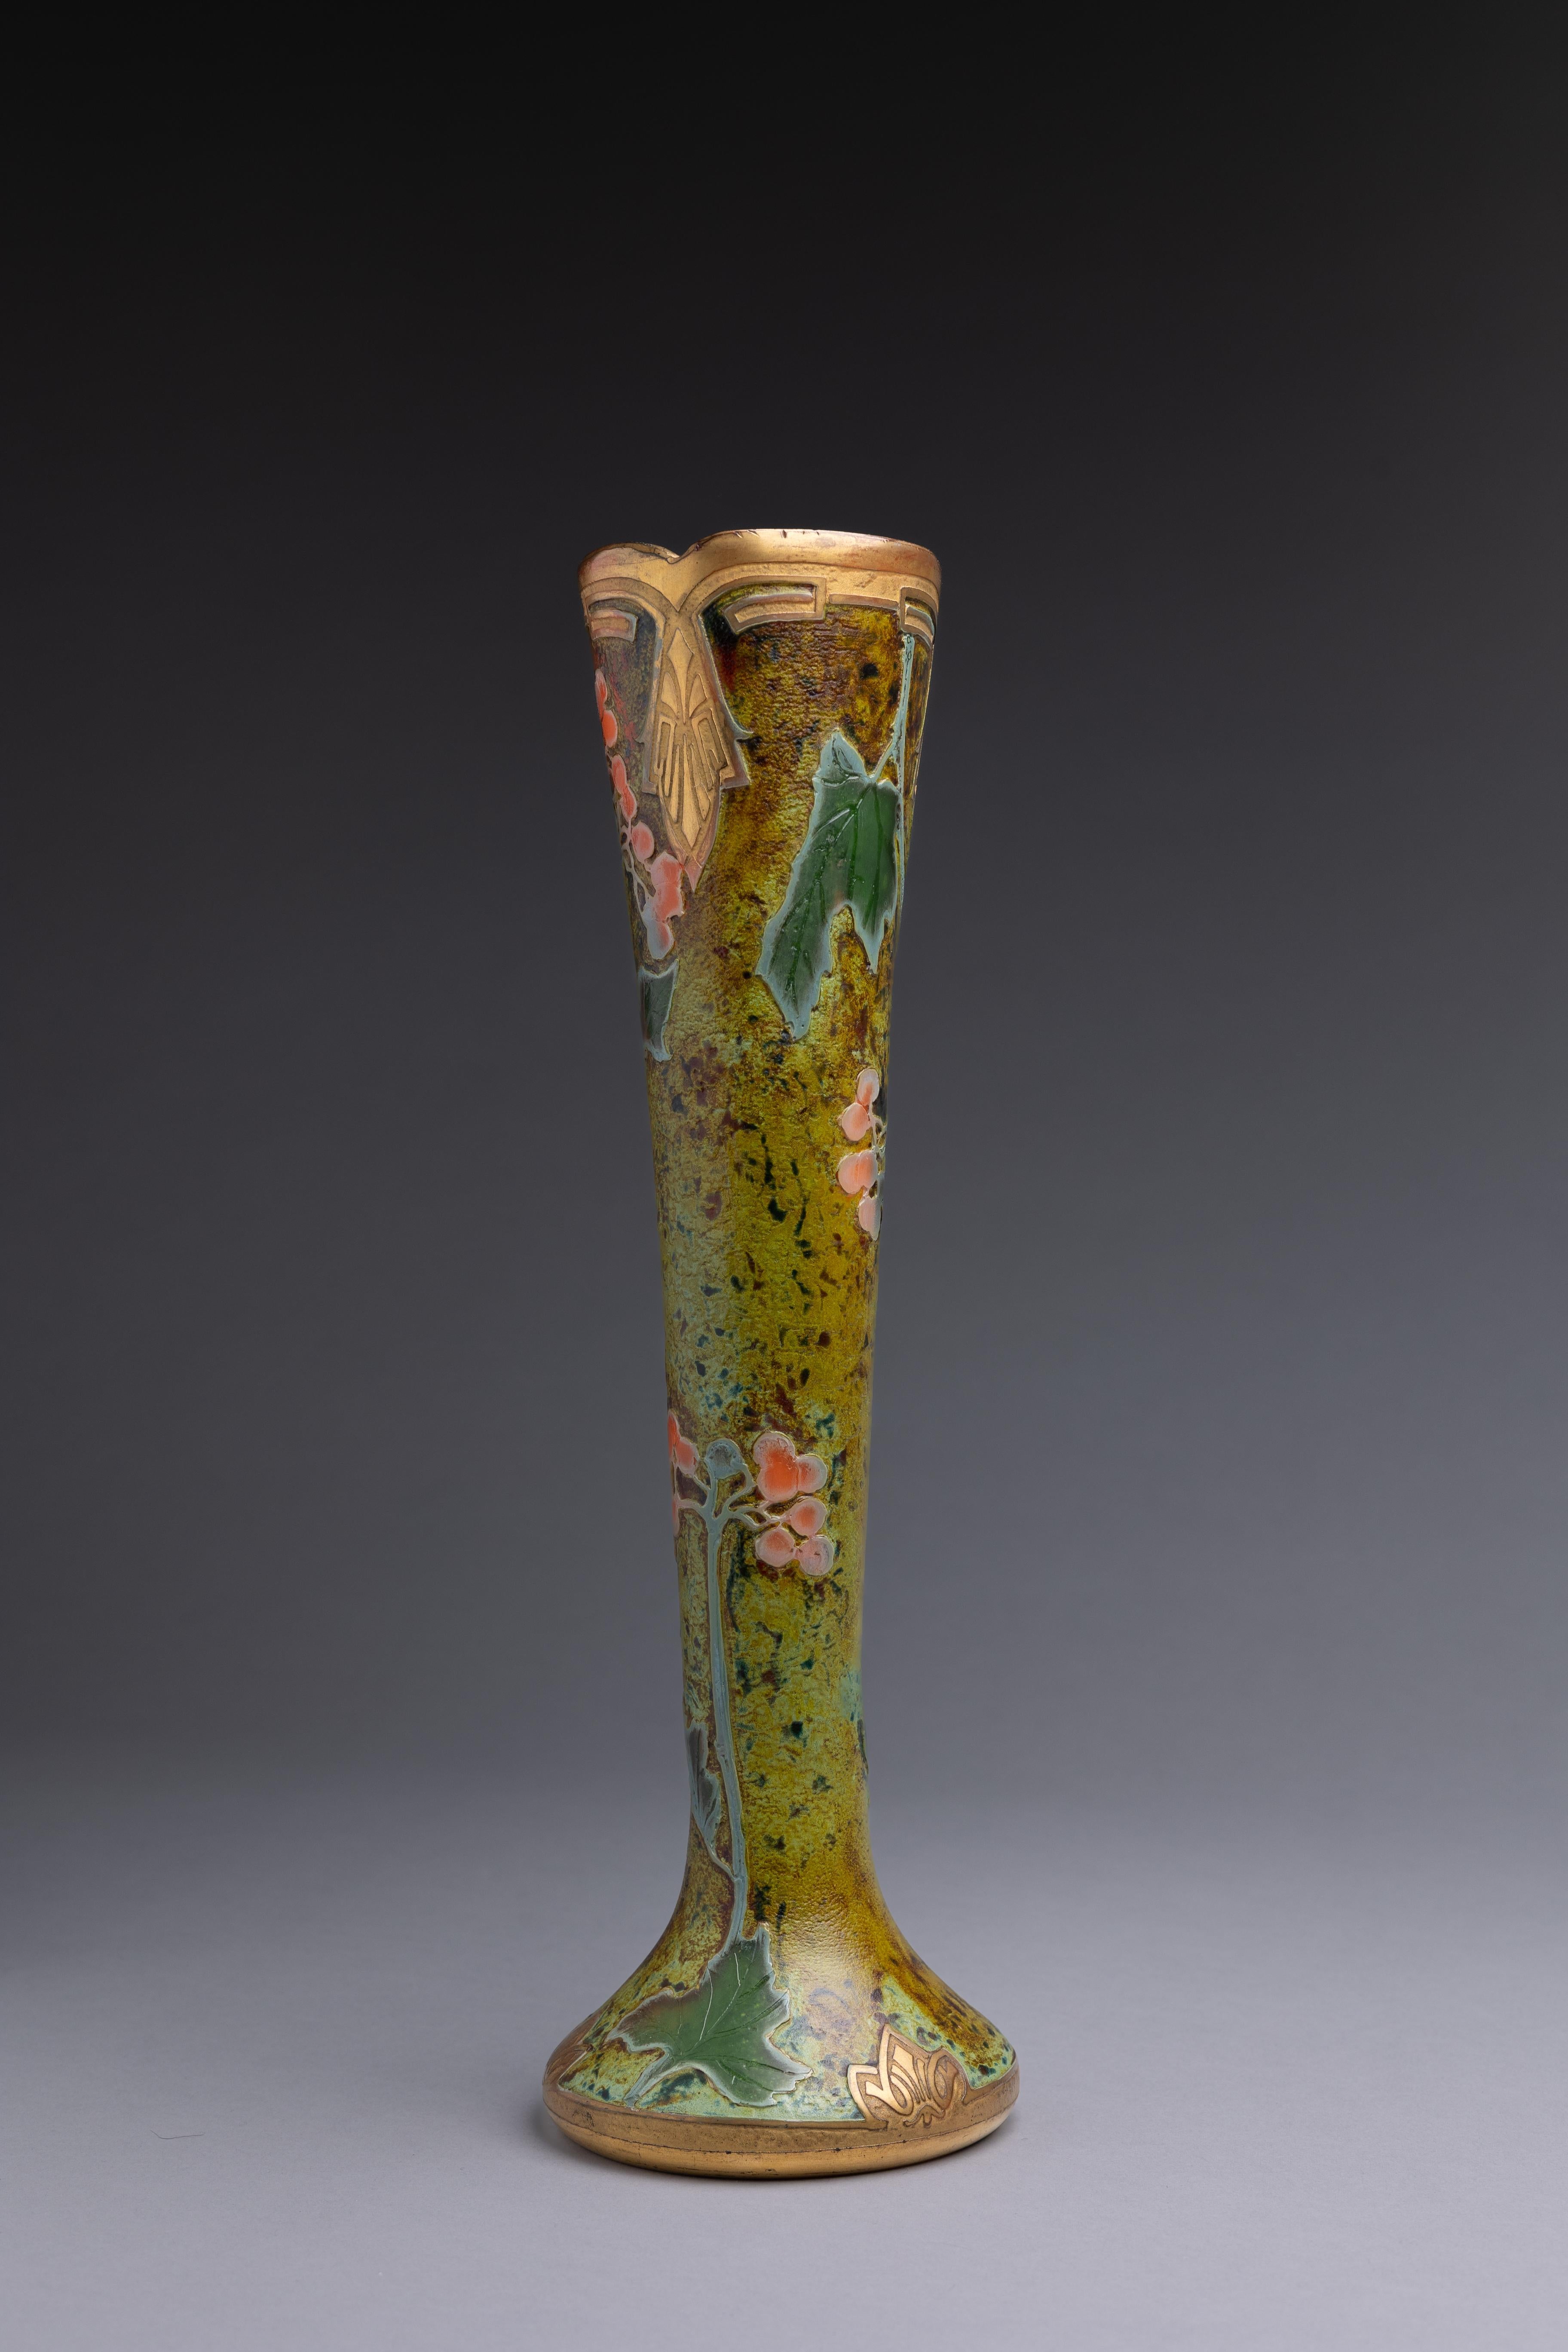 Un vase en verre Art Nouveau, fabriqué par la manufacture française de verre Legras et Cie vers 1900-1914.

La France est devenue le centre de la production de verre d'art au début du XXe siècle, avec des noms tels que Gall, Daum et Lalique